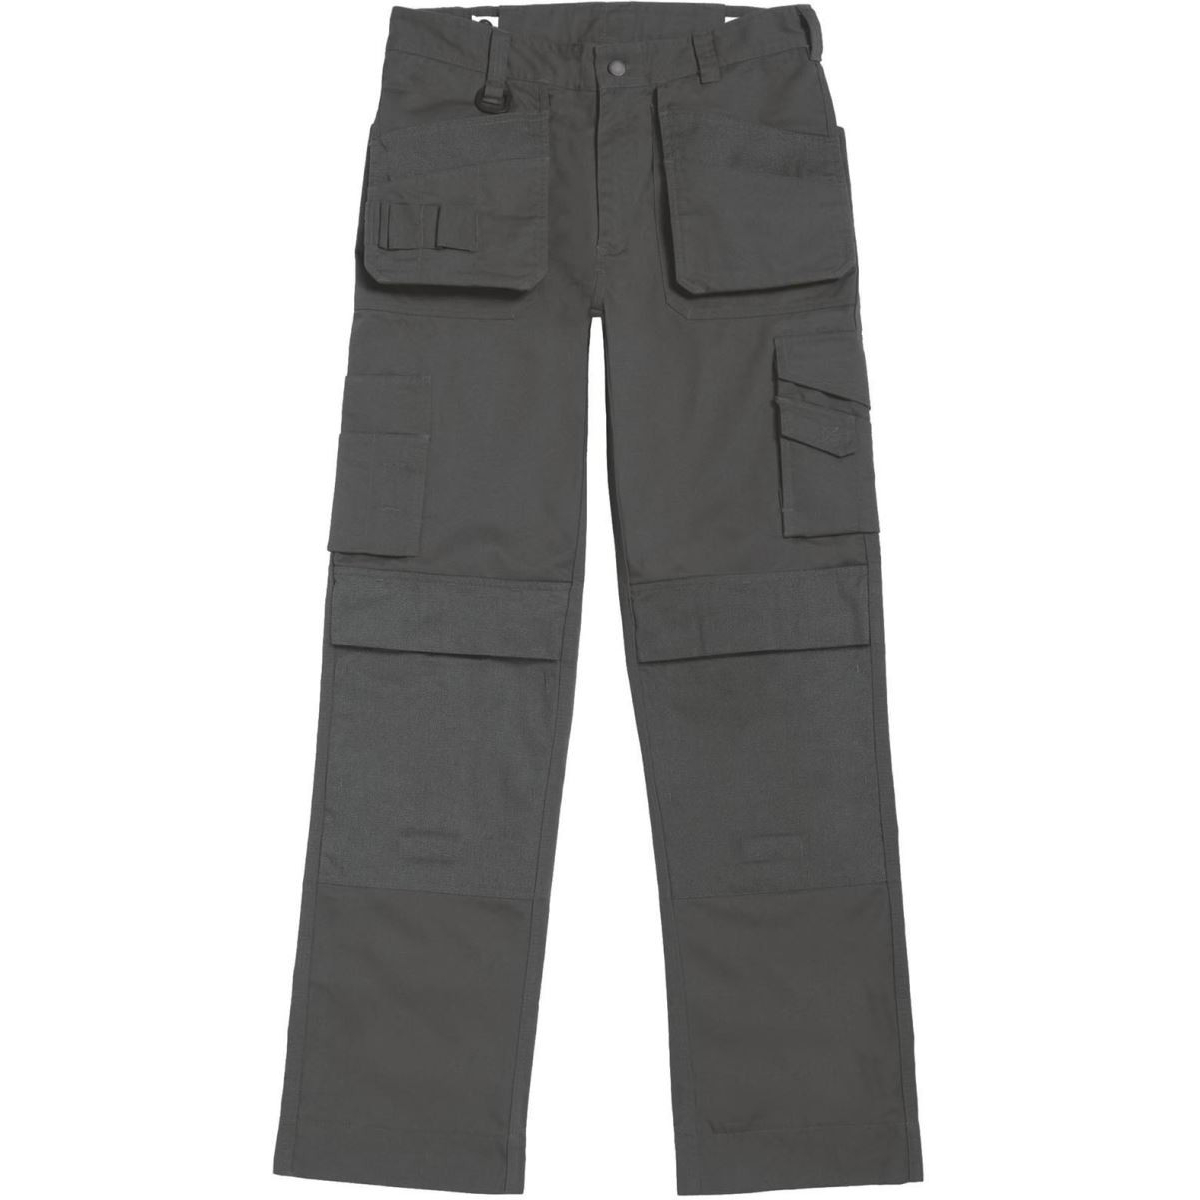 Pánské pracovní kalhoty B&C Performance Pro s multi-kapsami - šedé, 52